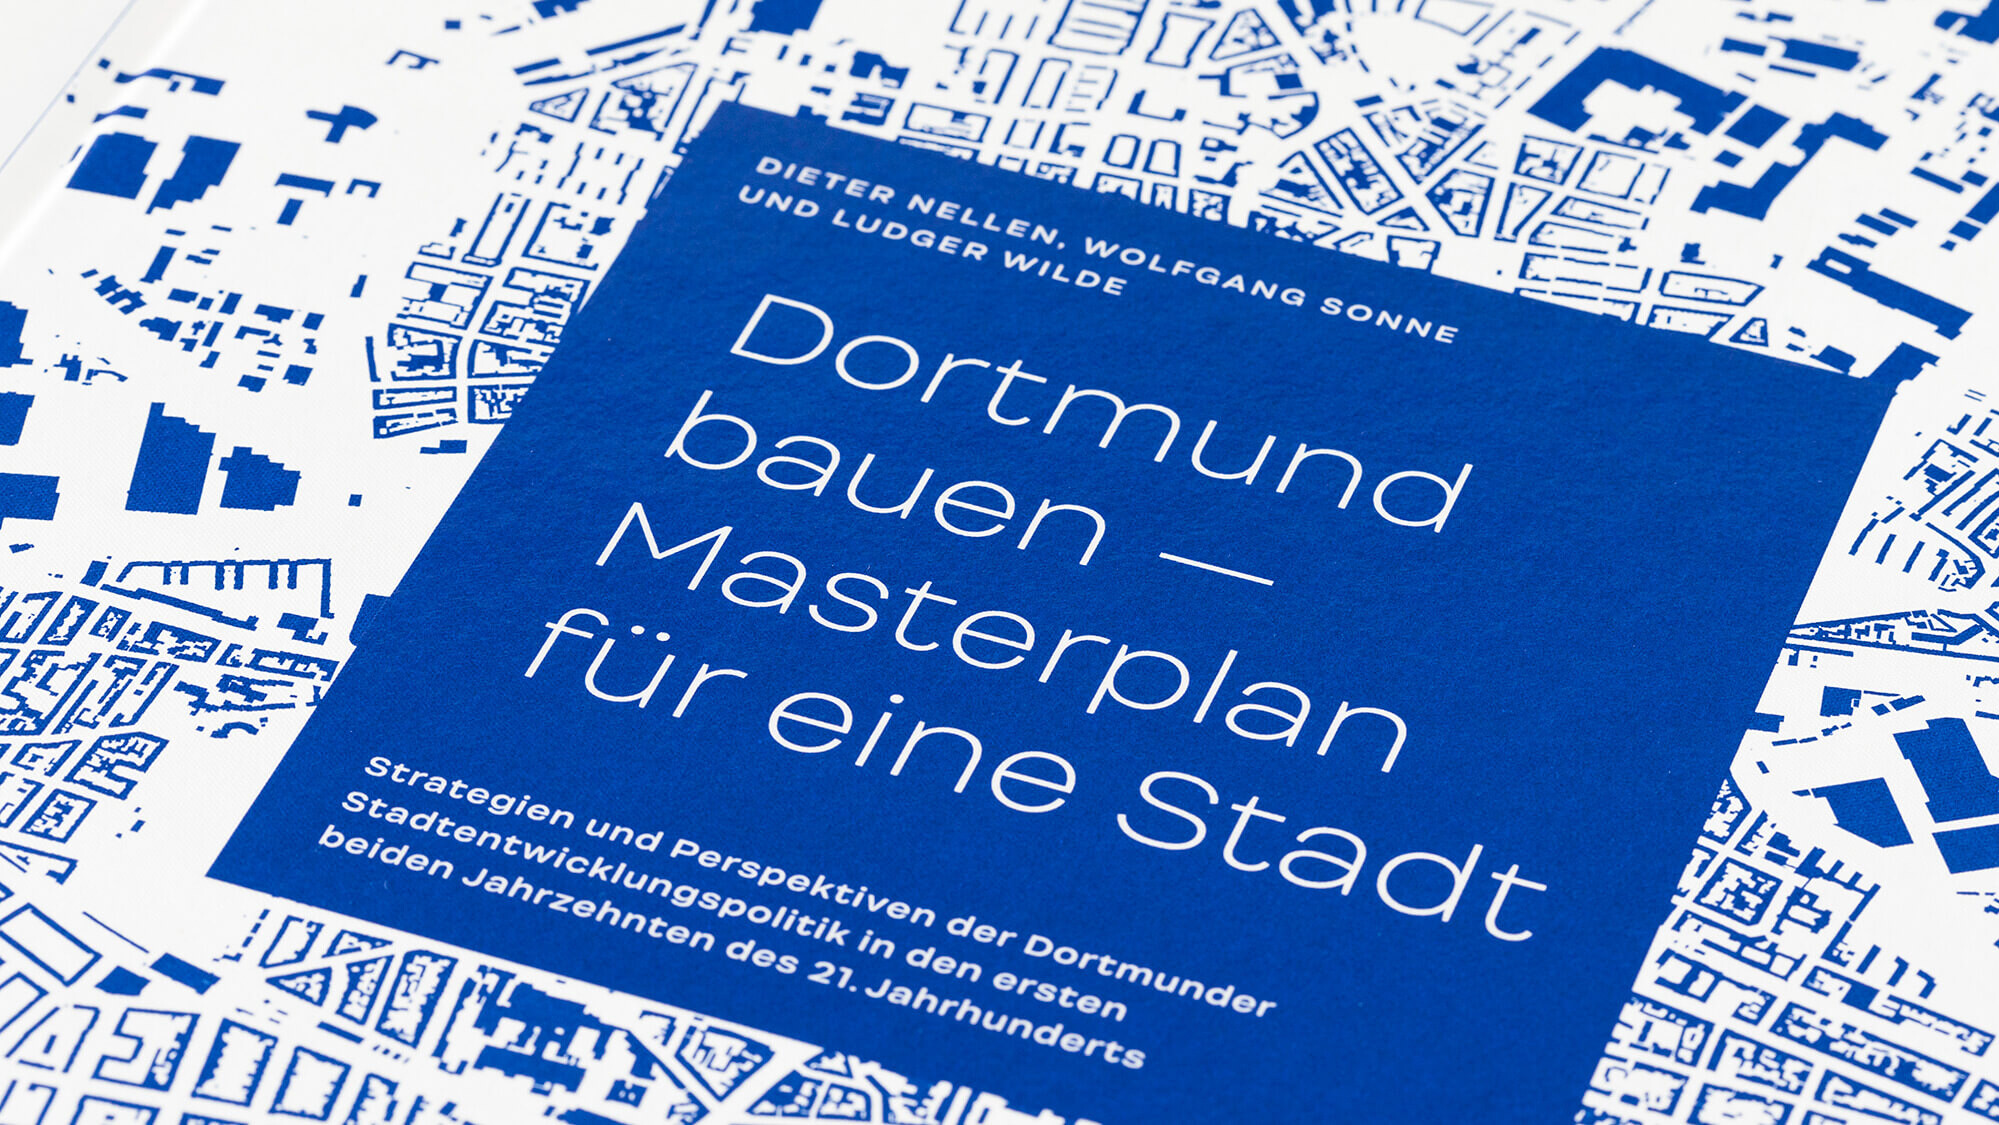 Detailaufnahme des blau-weißen Coverdesign von Dortmund bauen